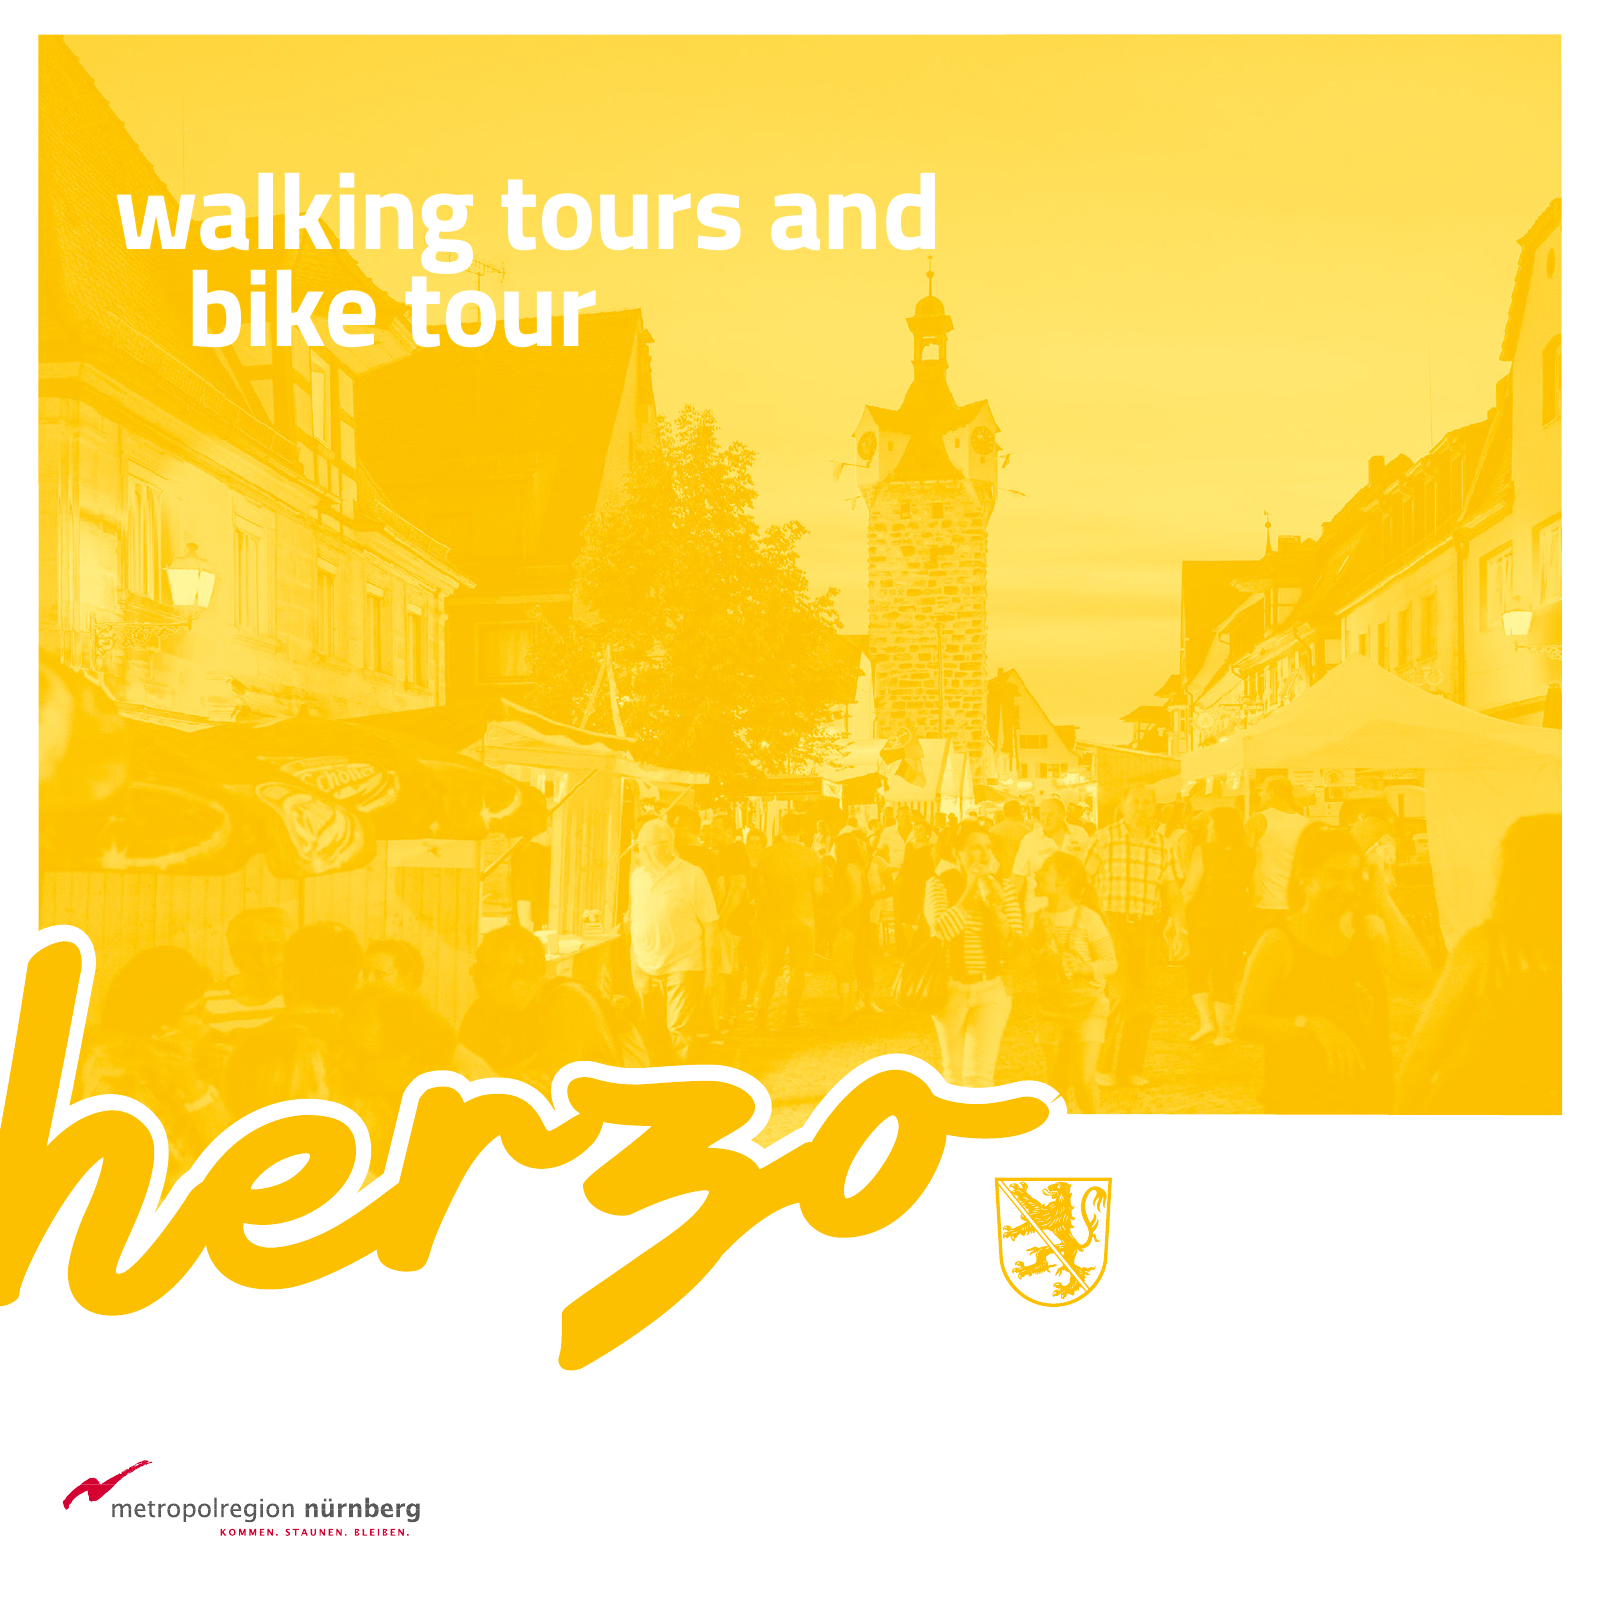 Vorschau herzo Walking Tours And Bike Tour Seite 1